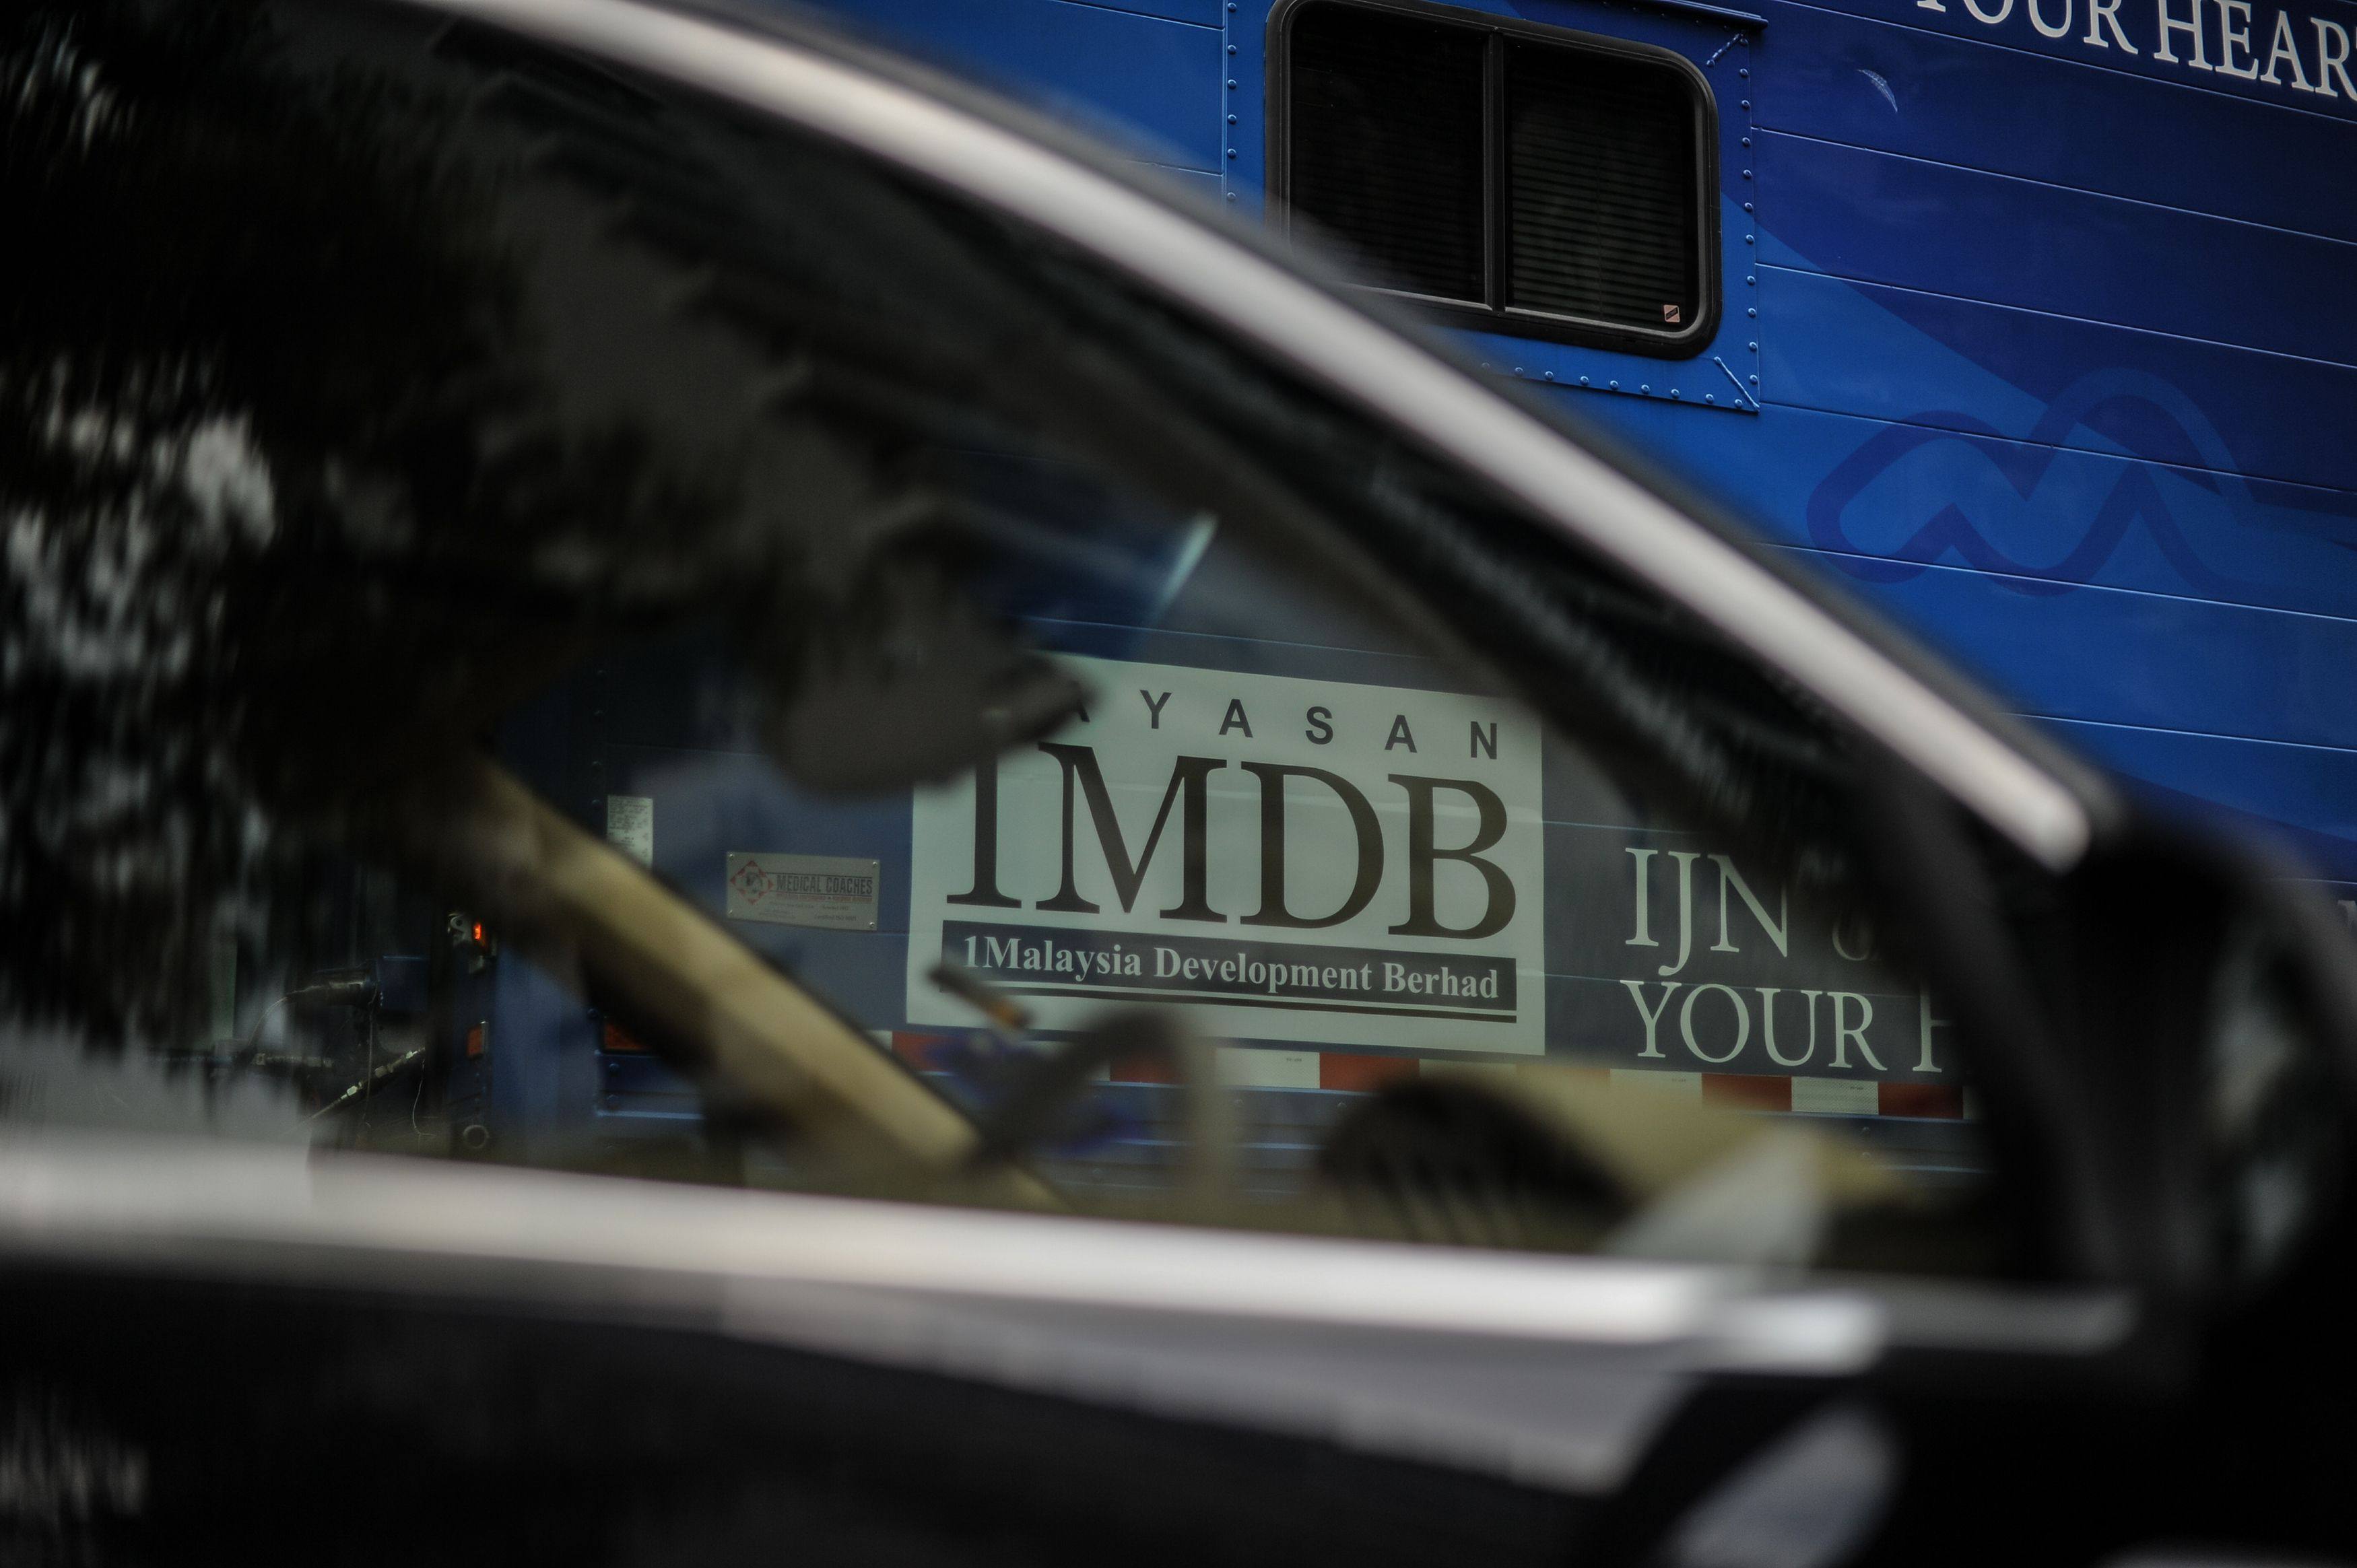 The 1MDB logo is seen through the window of a car in Kuala Lumpur, Malaysia in March 2016. Photo: AFP